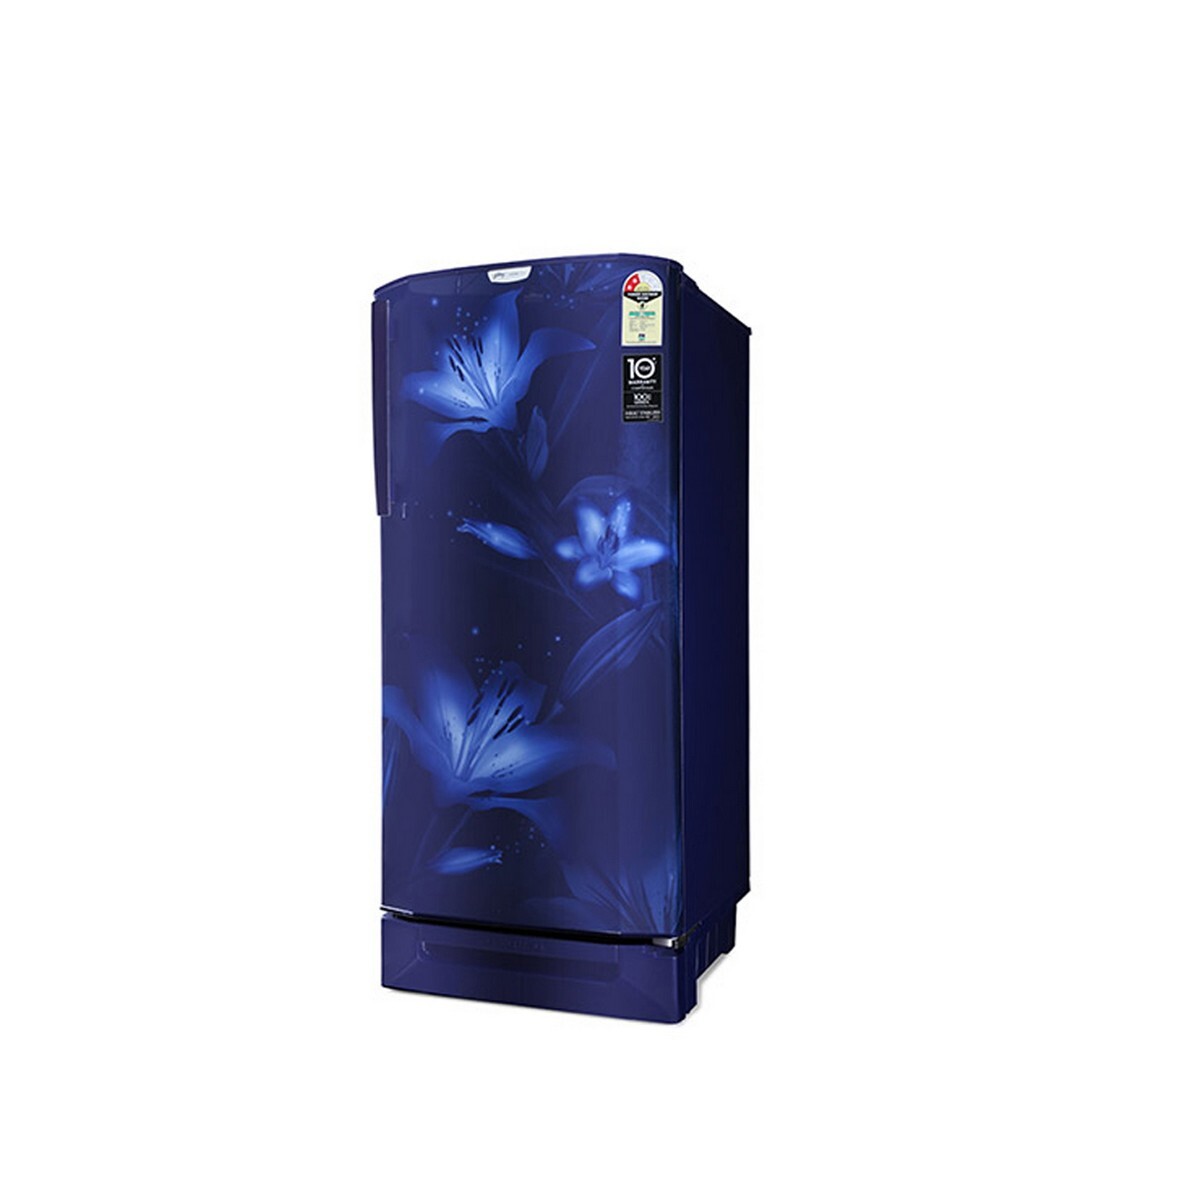 Godrej Direct Cool Refrigirator RD EDGENEO 207B 23 THF BH BL